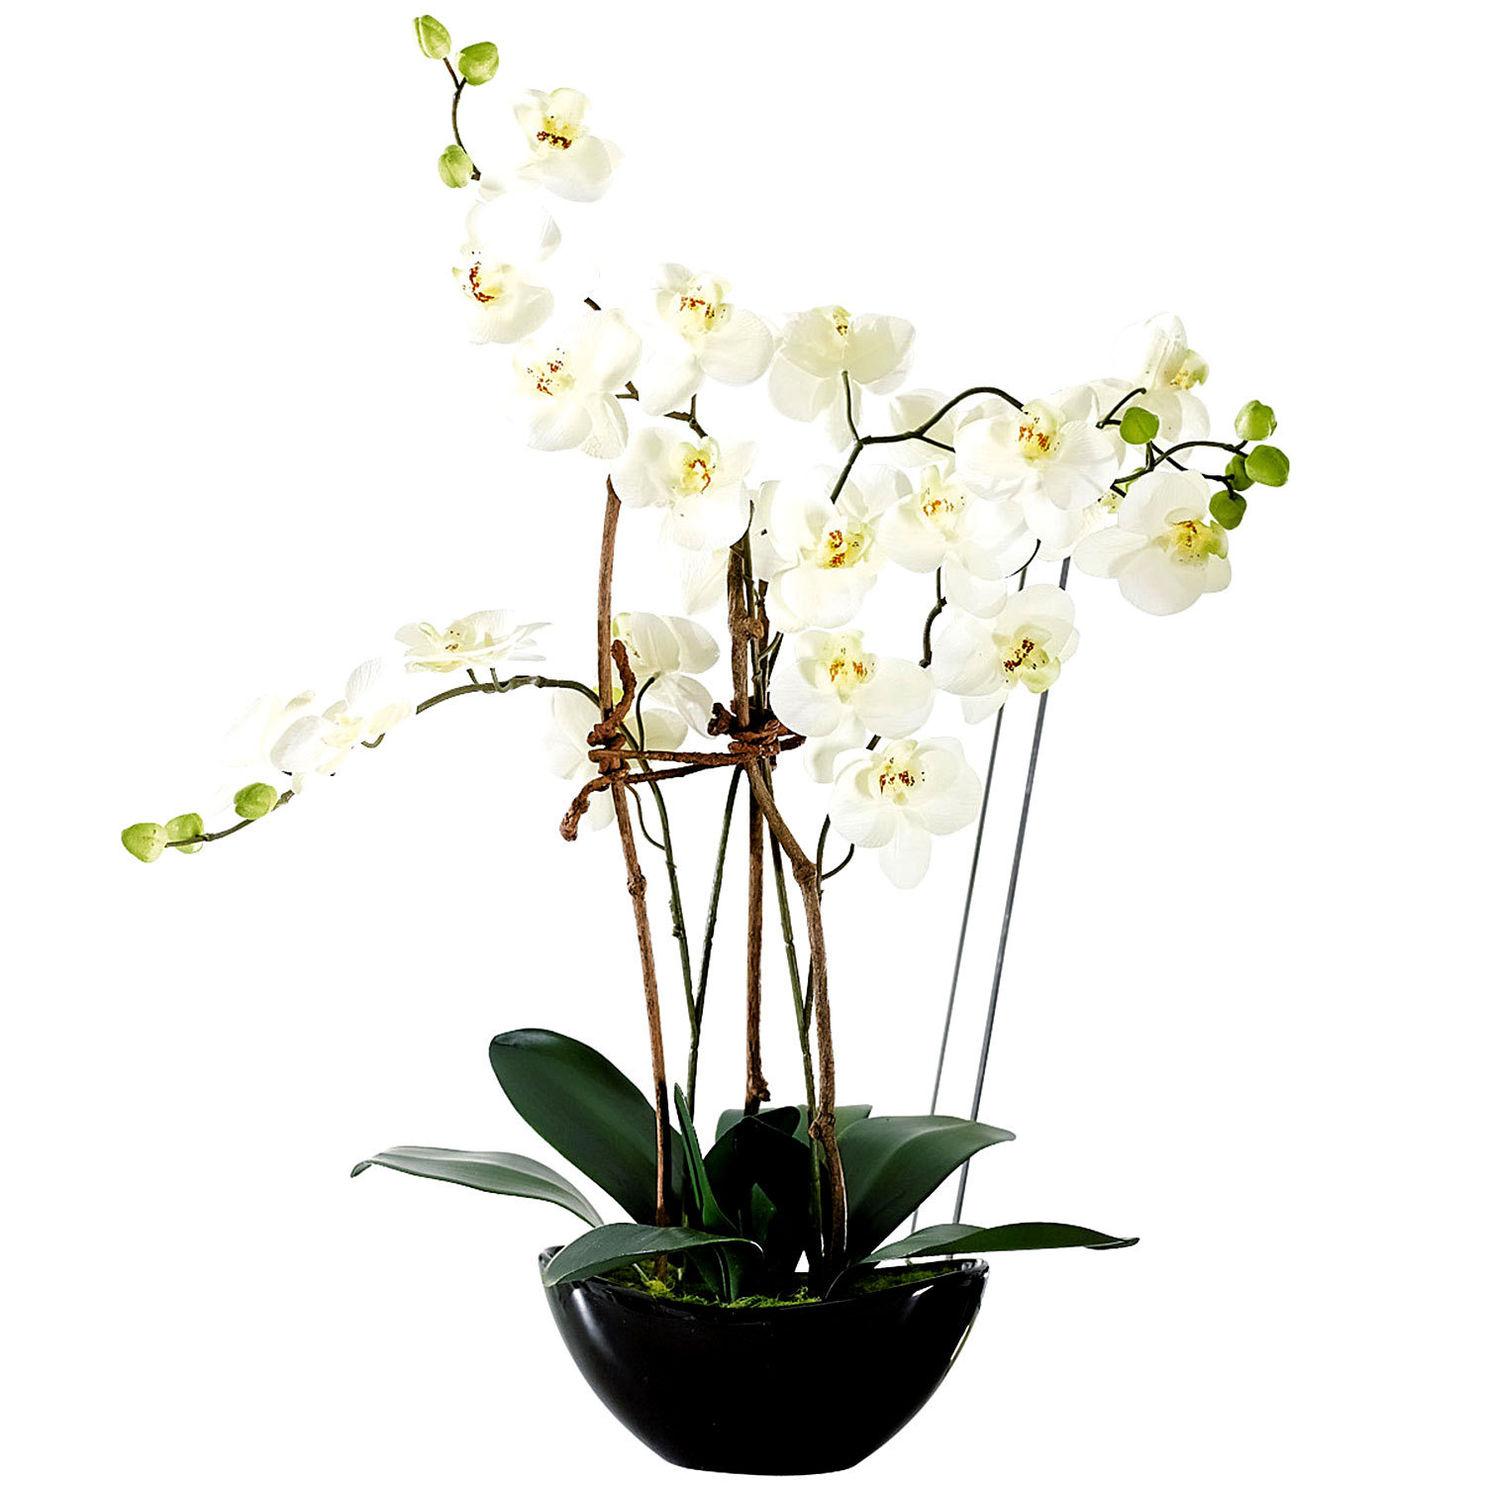 Kunstpflanze Orchideentopf Modern jetzt bei Weltbild.de bestellen